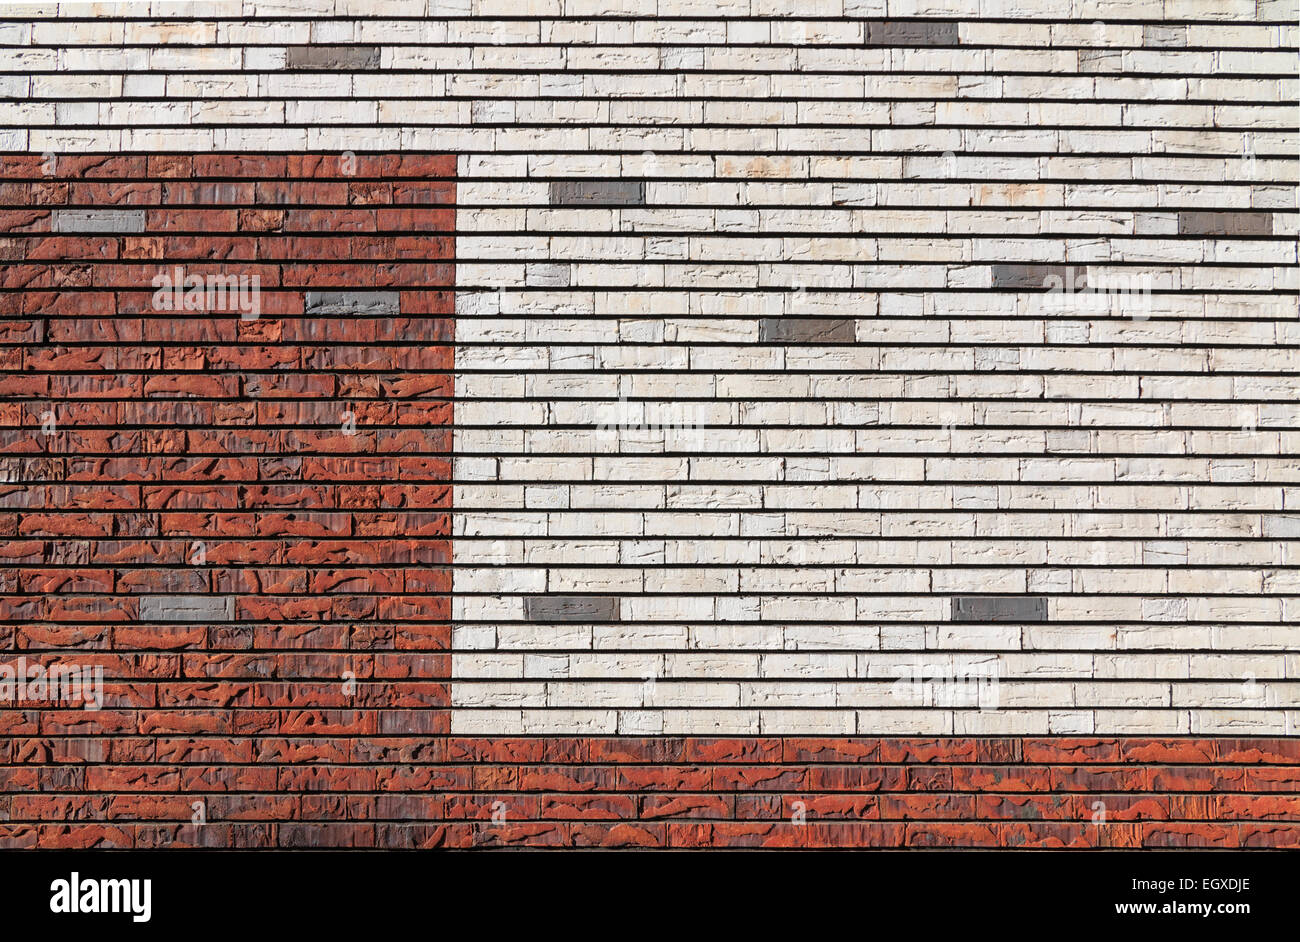 Weiß und orange roten Backsteinmauer mit unregelmäßiger Oberfläche, durchsetzt mit einigen grauen Steinen Stockfoto